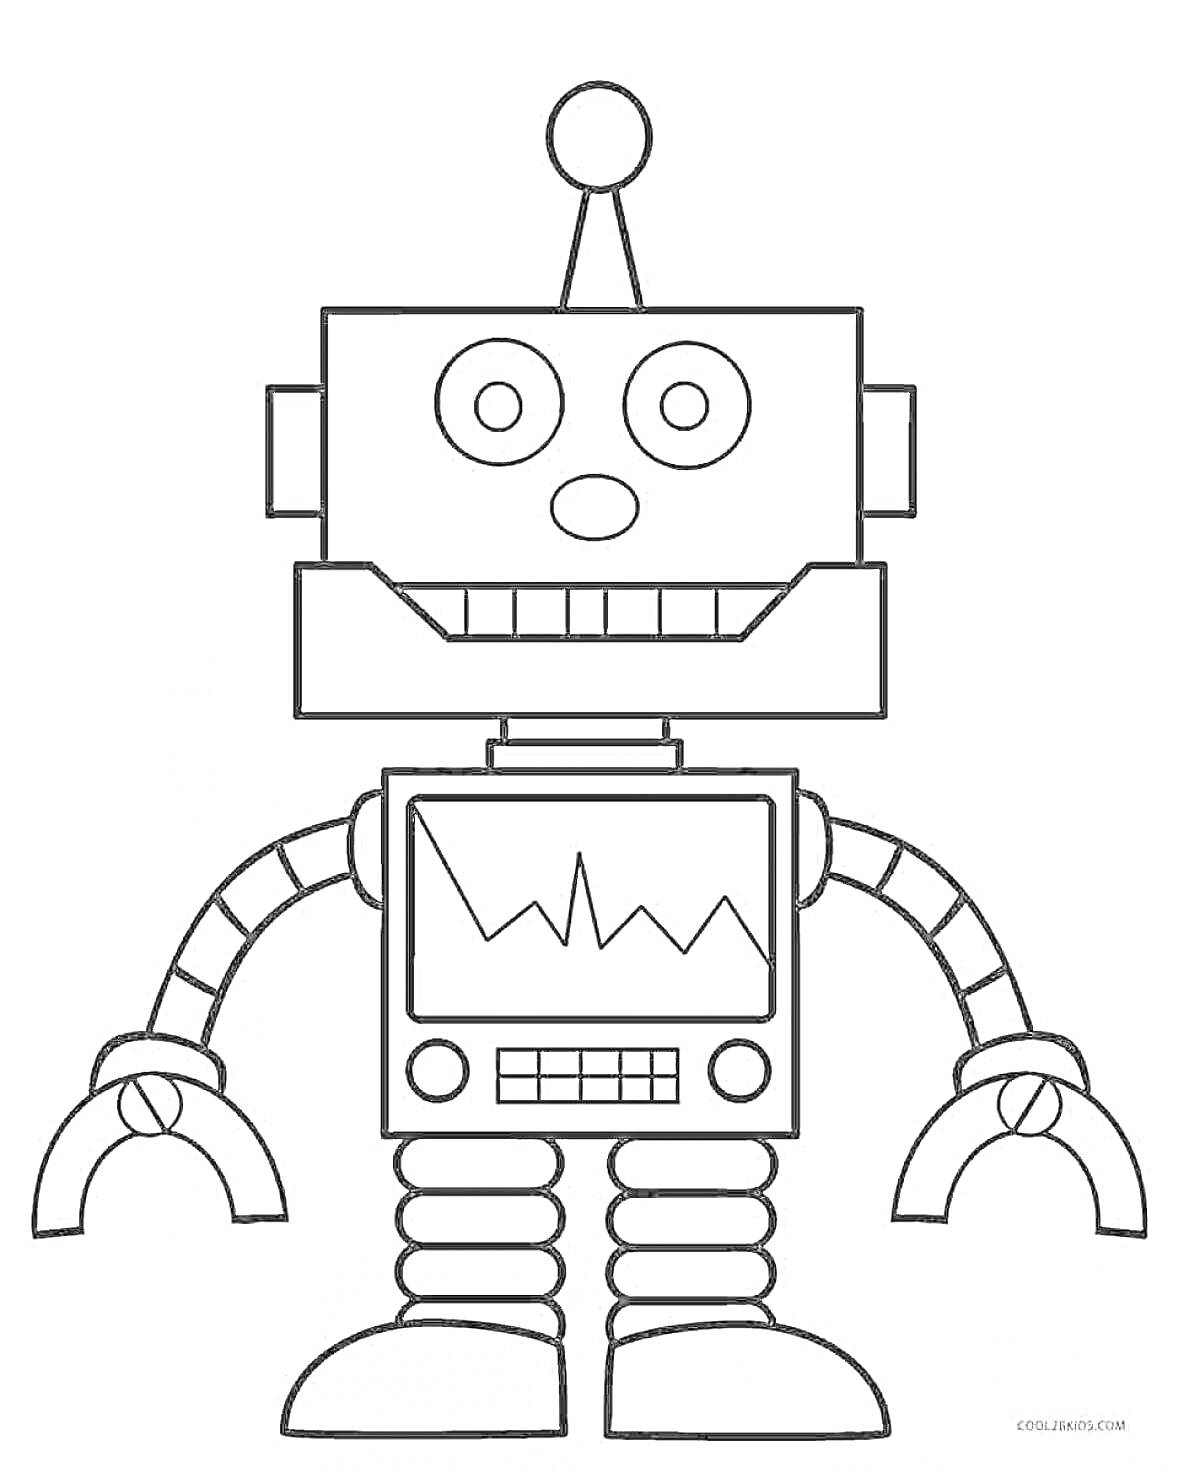 Робот с антенной, дисплеем, руками-когтями и лапами